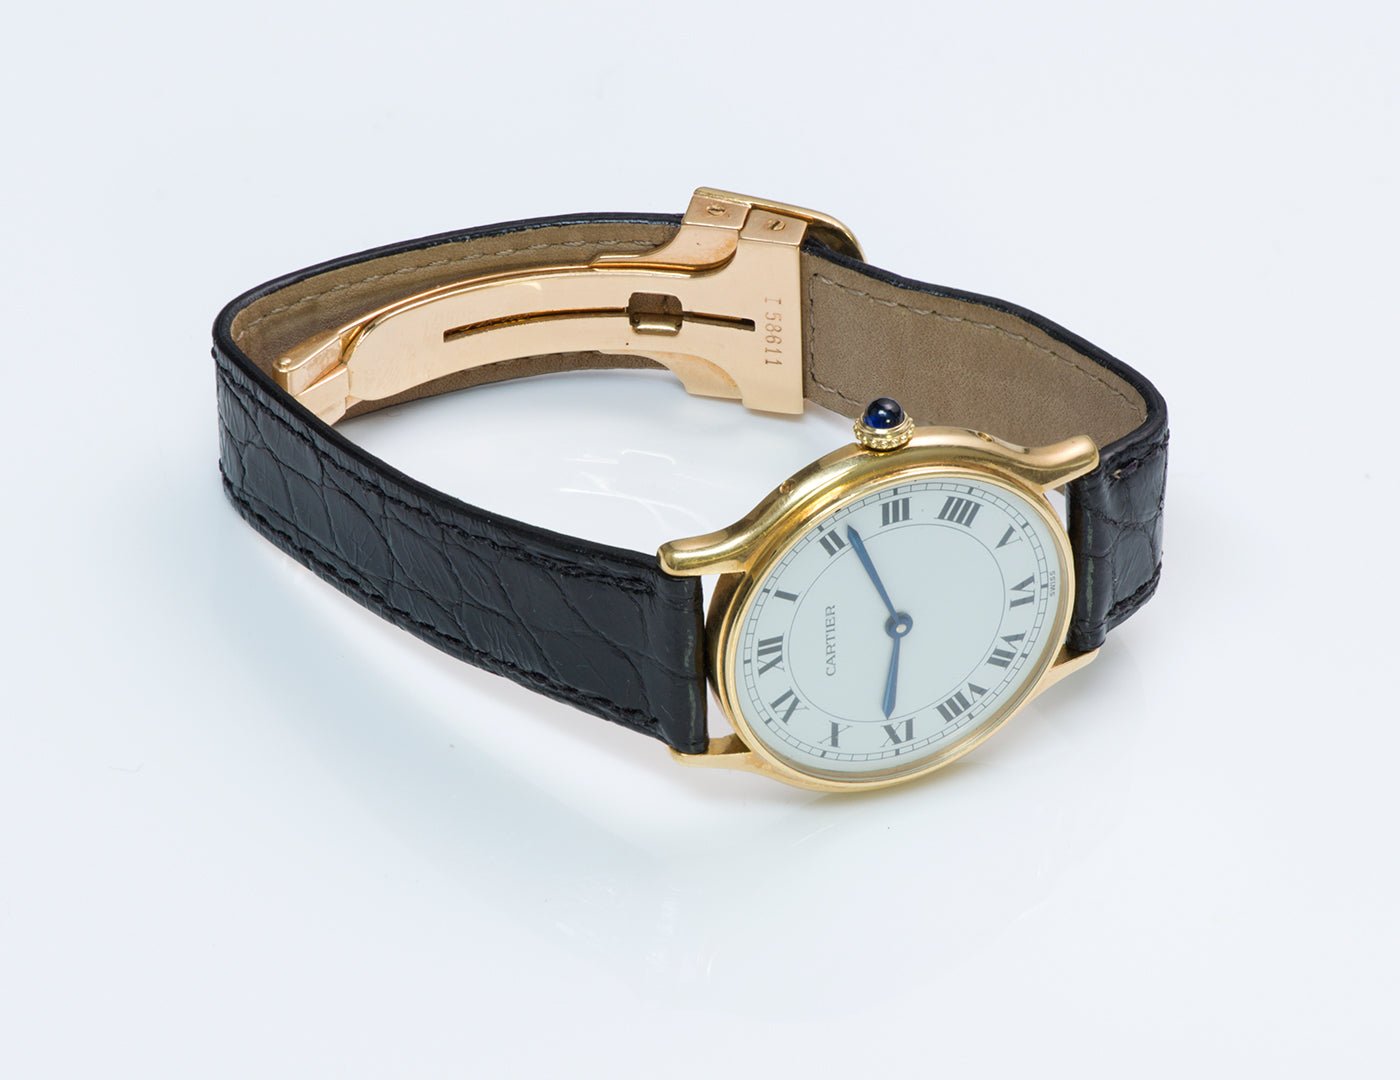 Cartier Paris Gold Watch